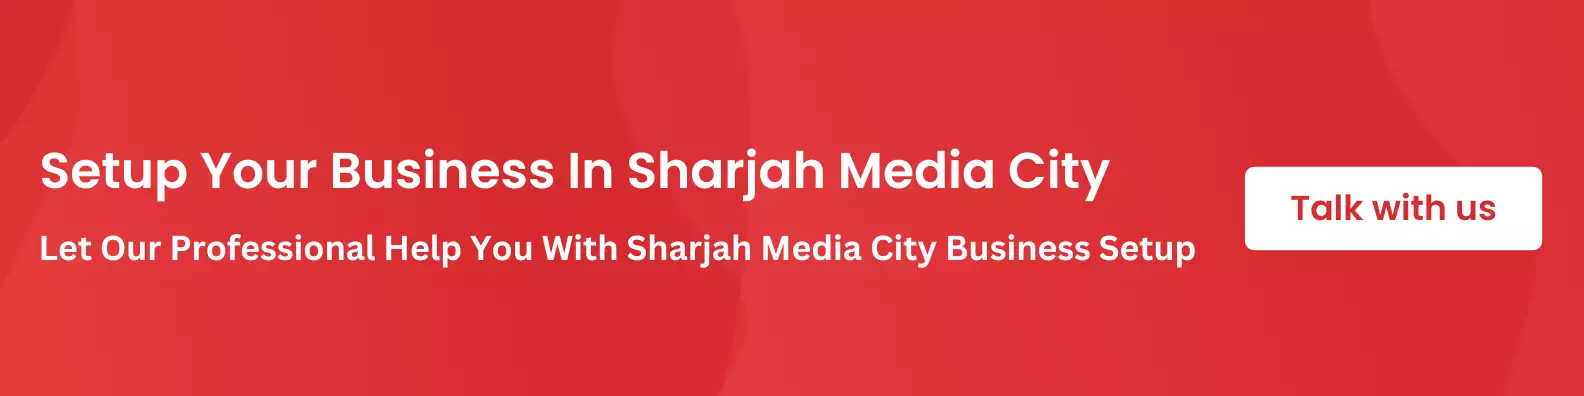 sharjah-media-city